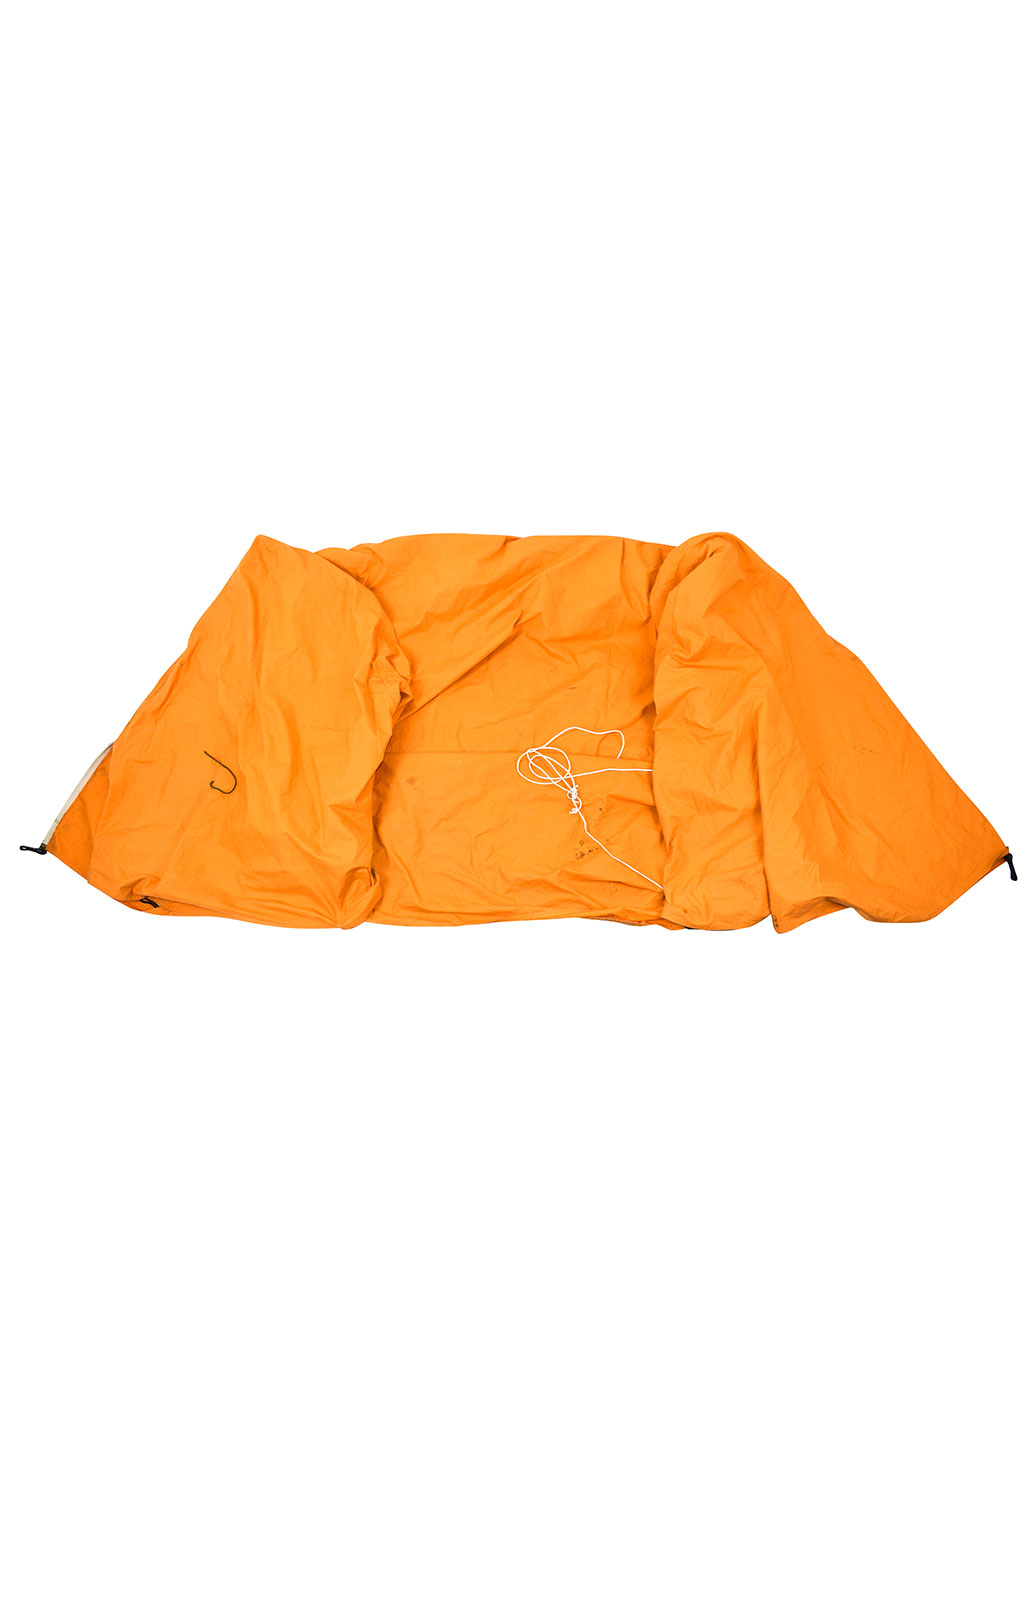 Палатка армейская orange б/у Англия